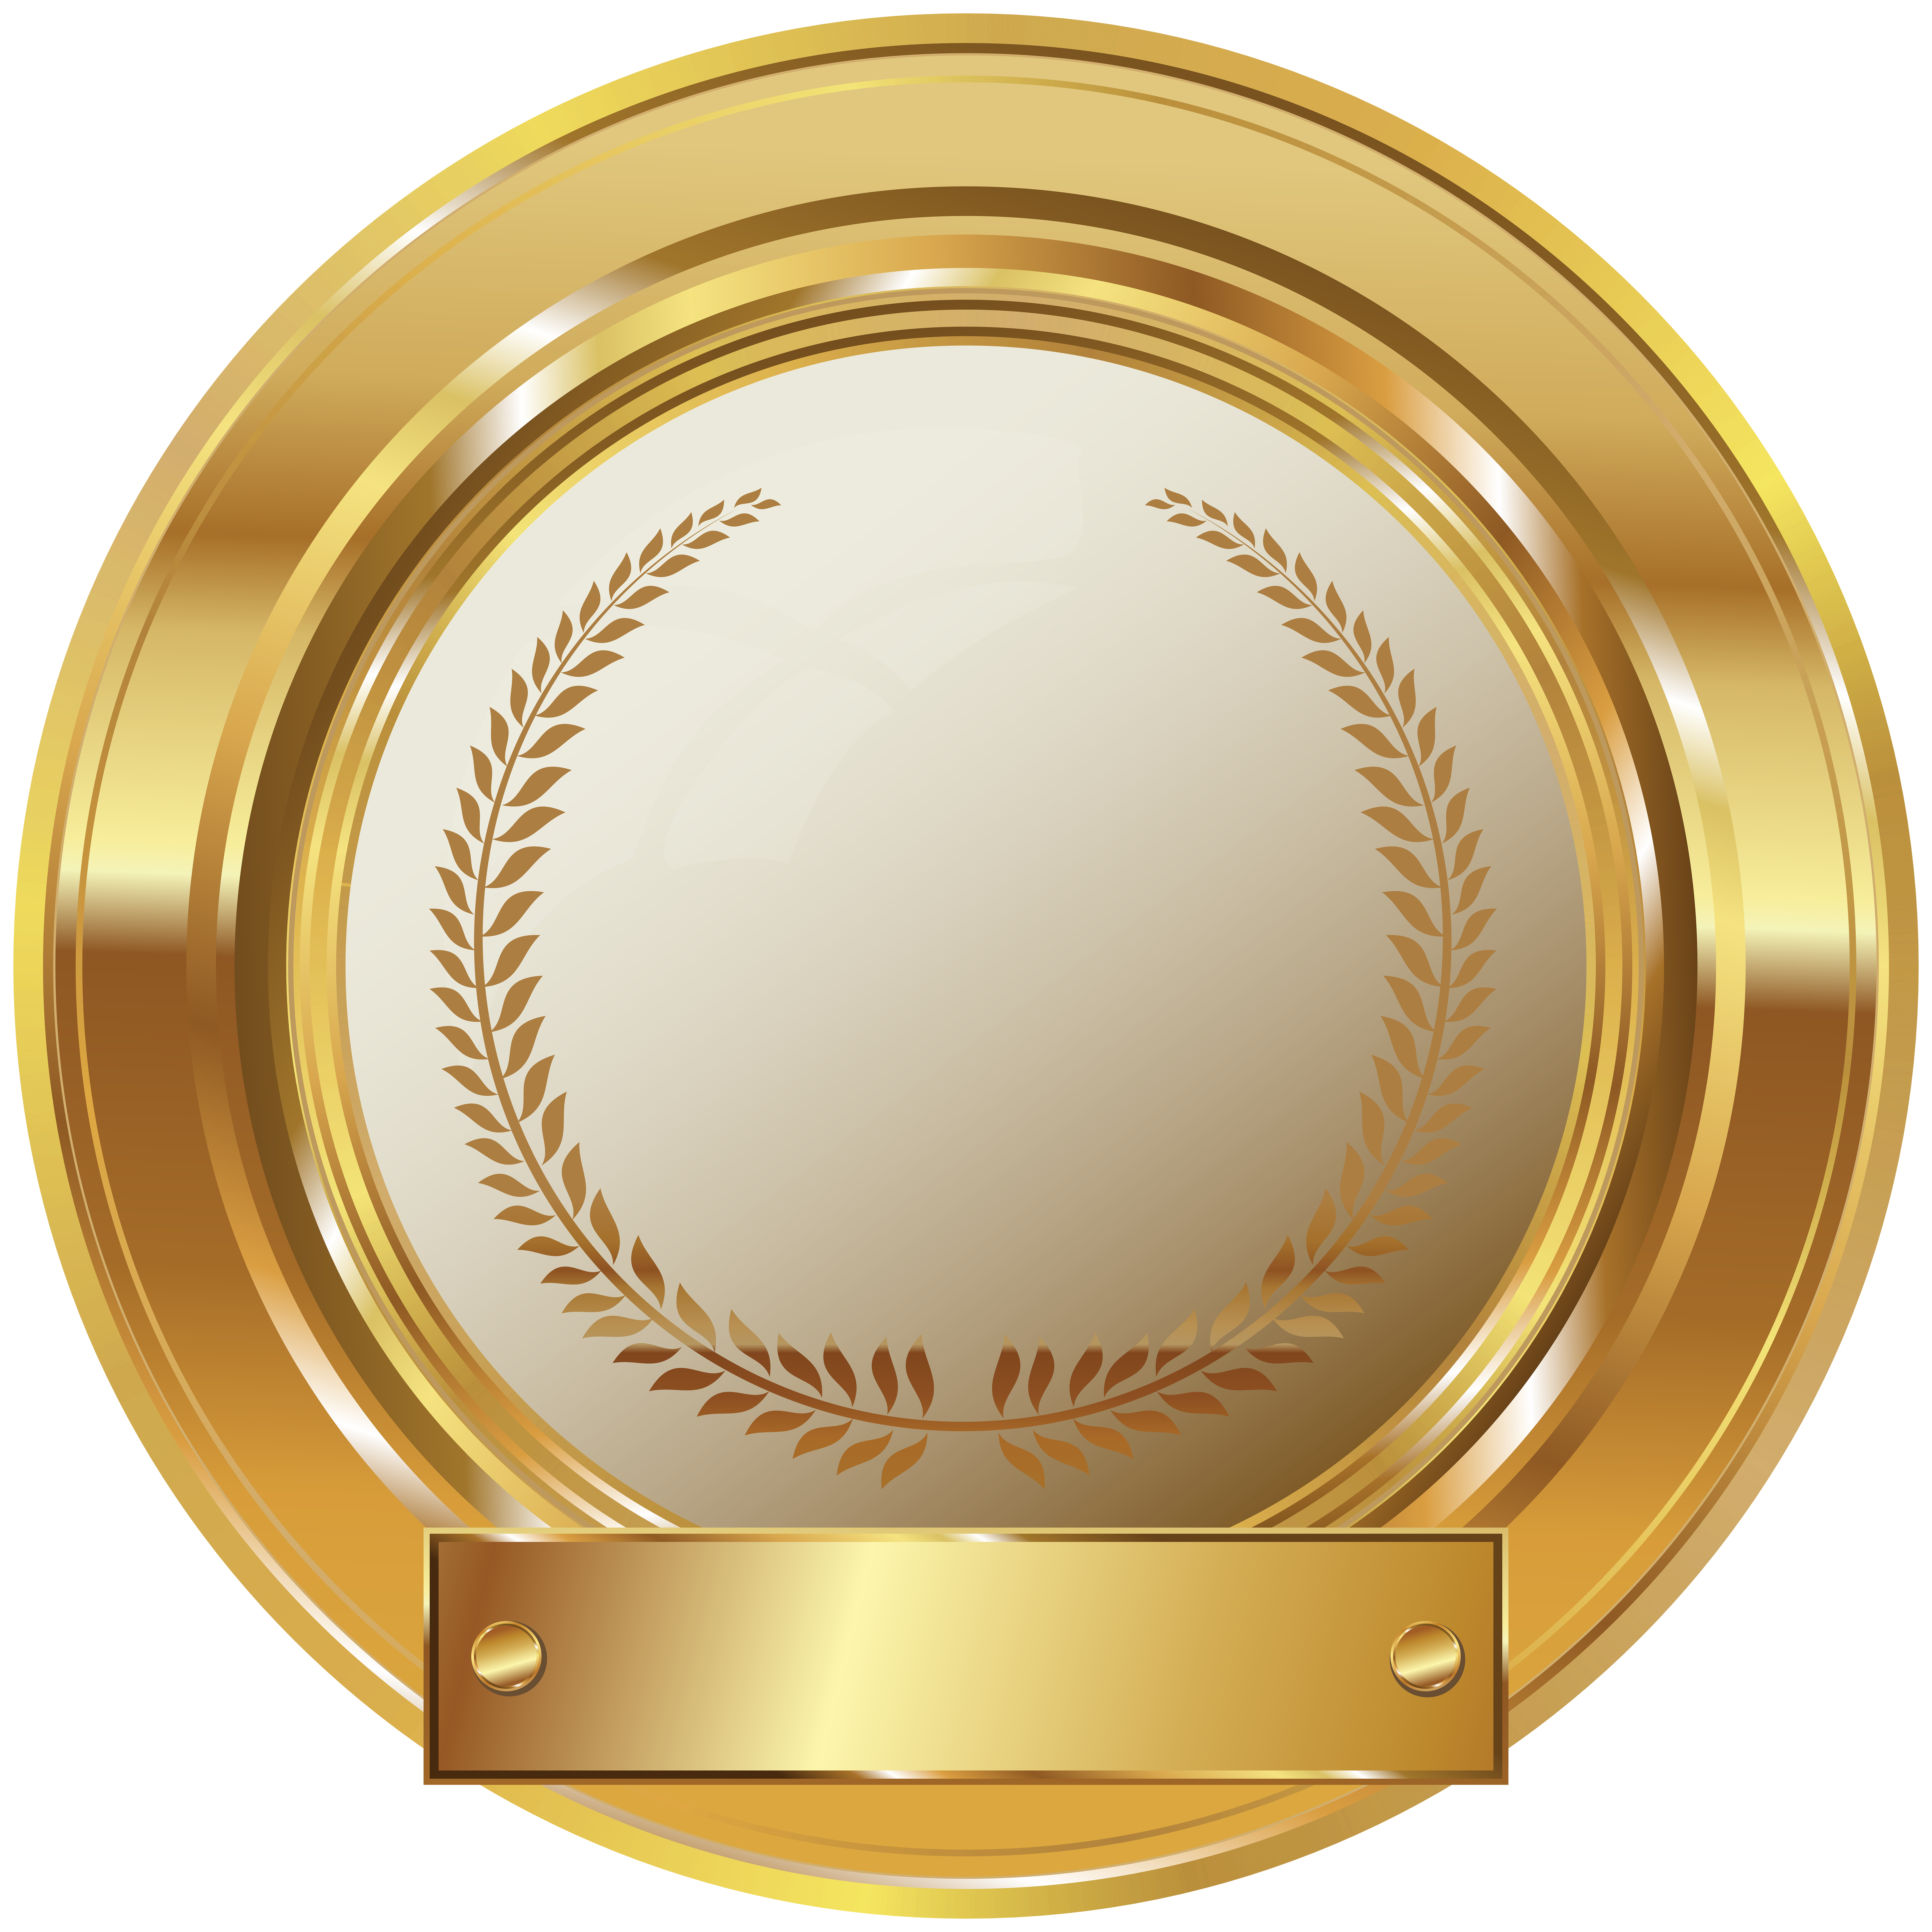 18 Golden Laurel Wreath, Award Badges, Laurel Frame PNG, Wreath -  FilterGrade